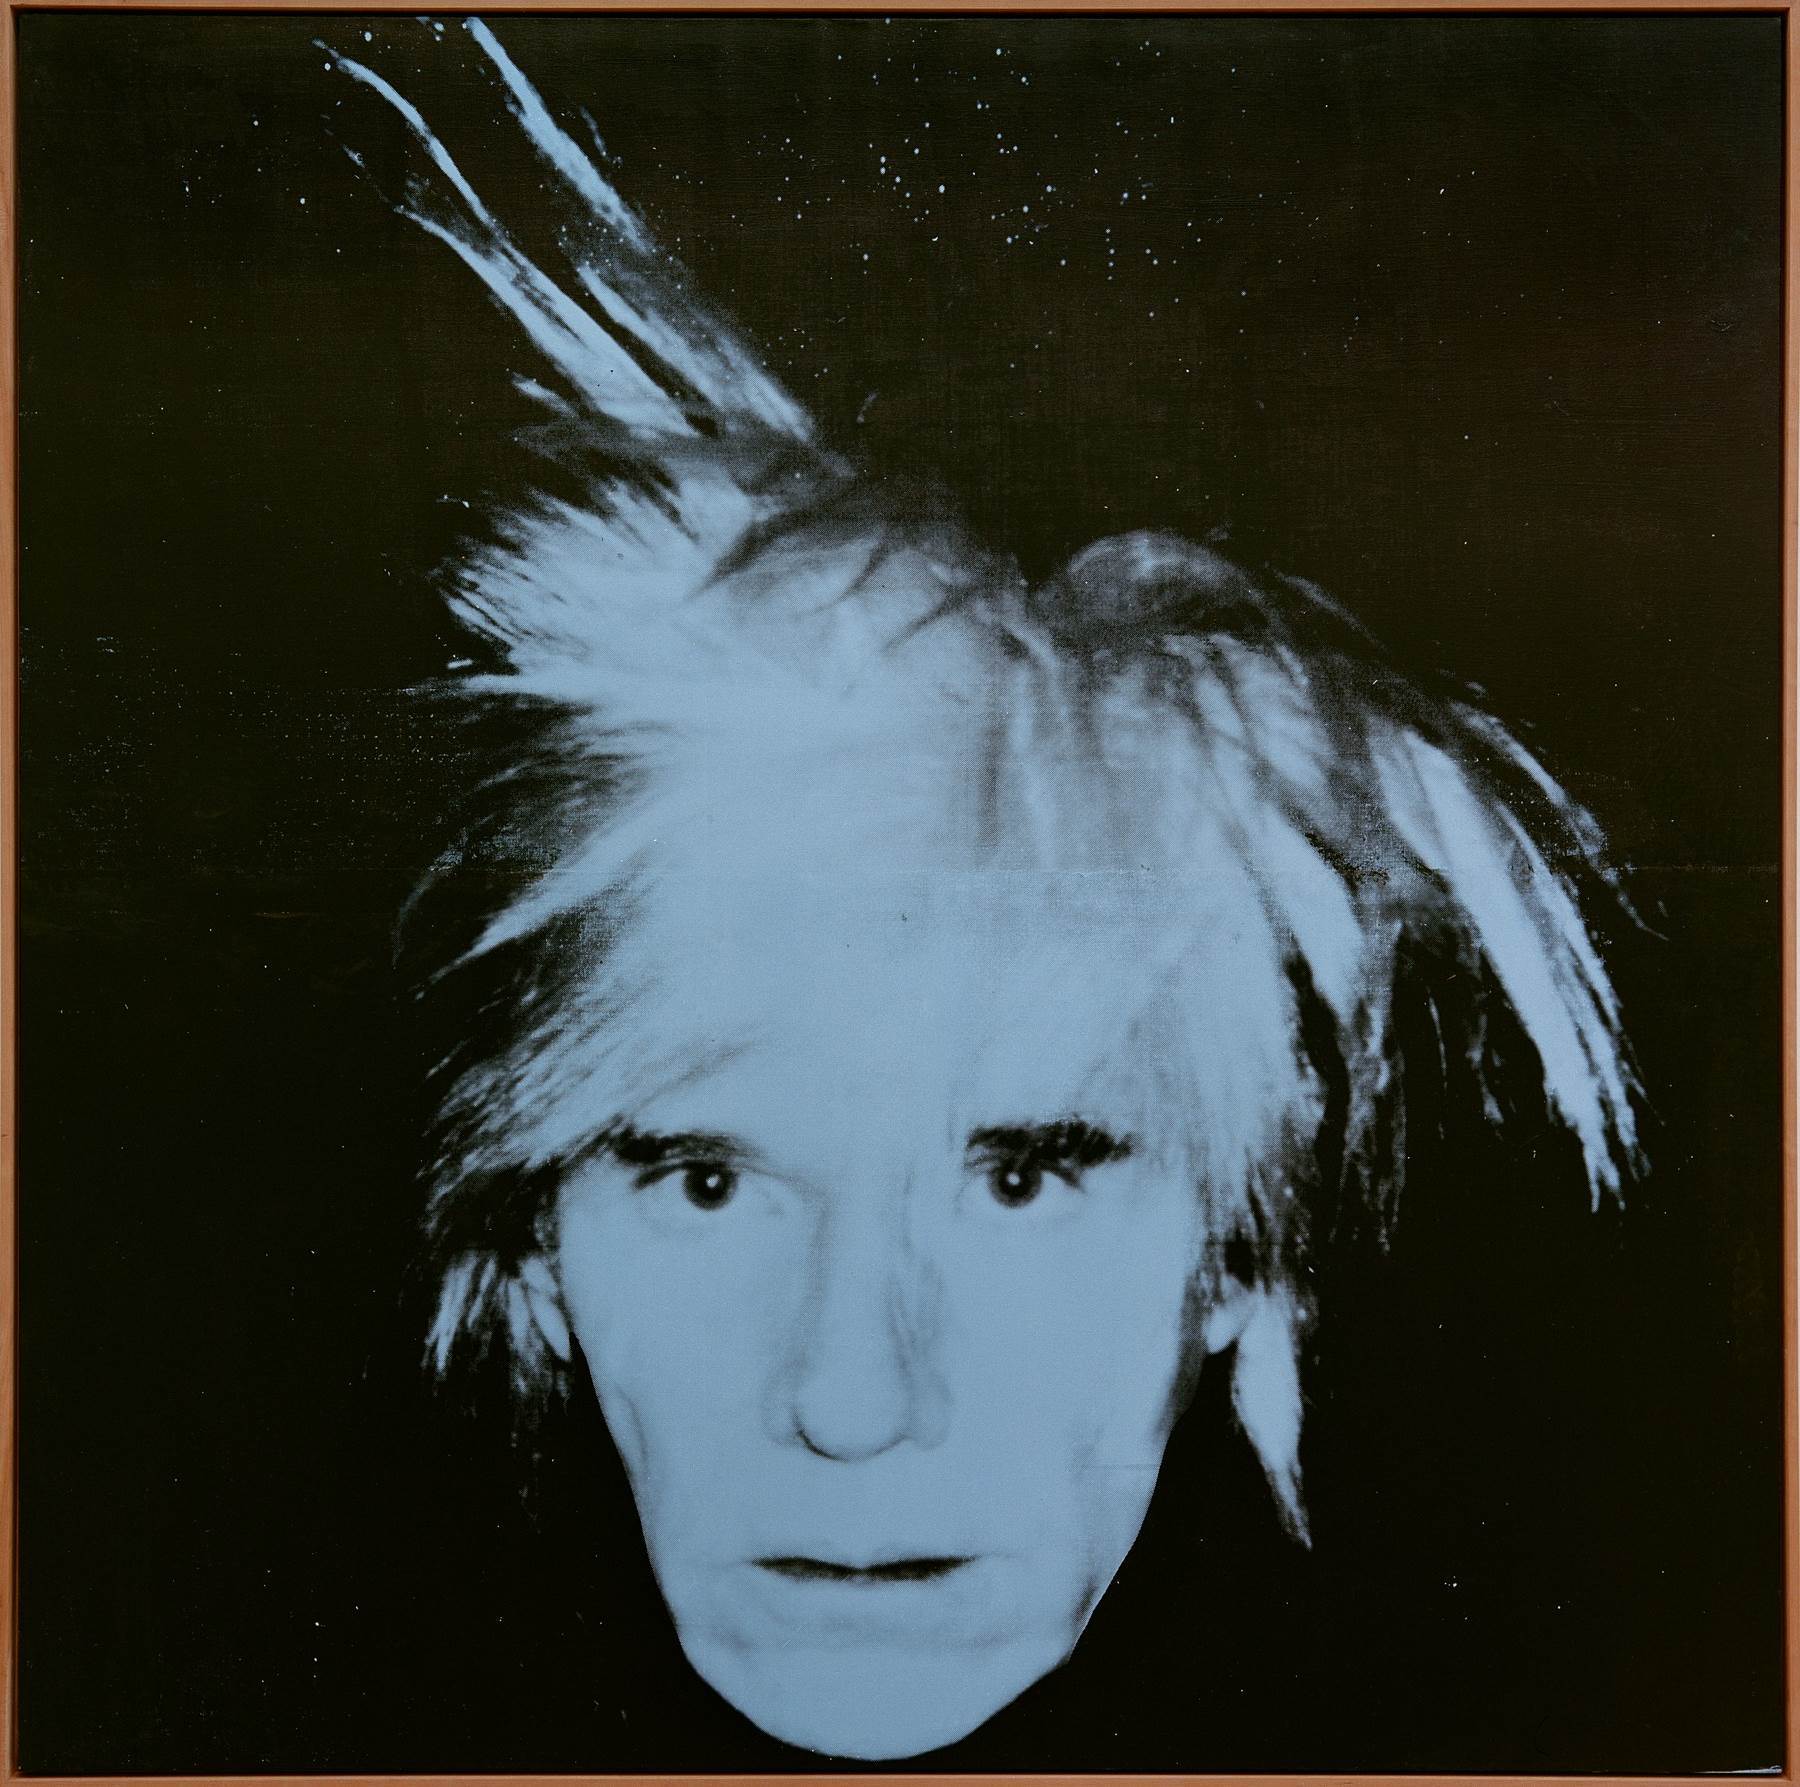 Jared Leto će glumiti ekscentričnu figuru Andyja Warhola u novom filmu